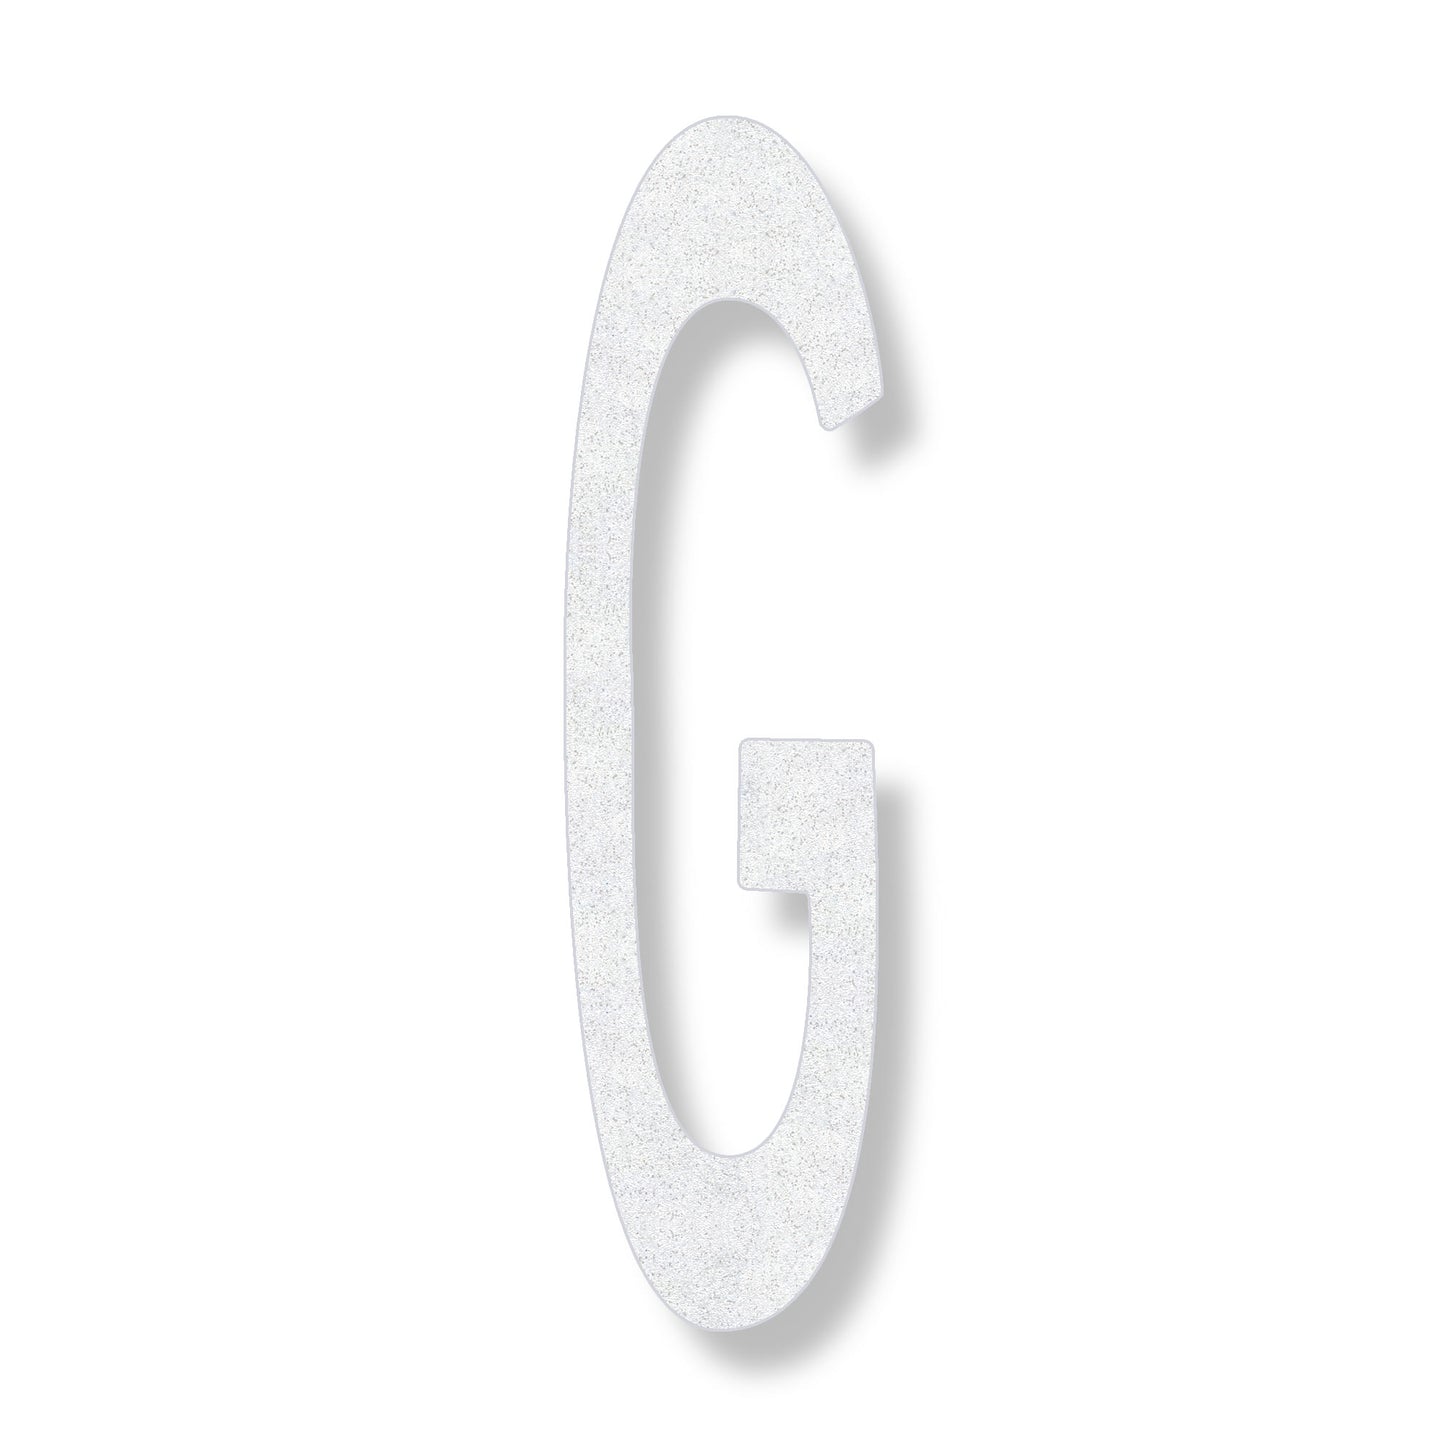 Letter G in white